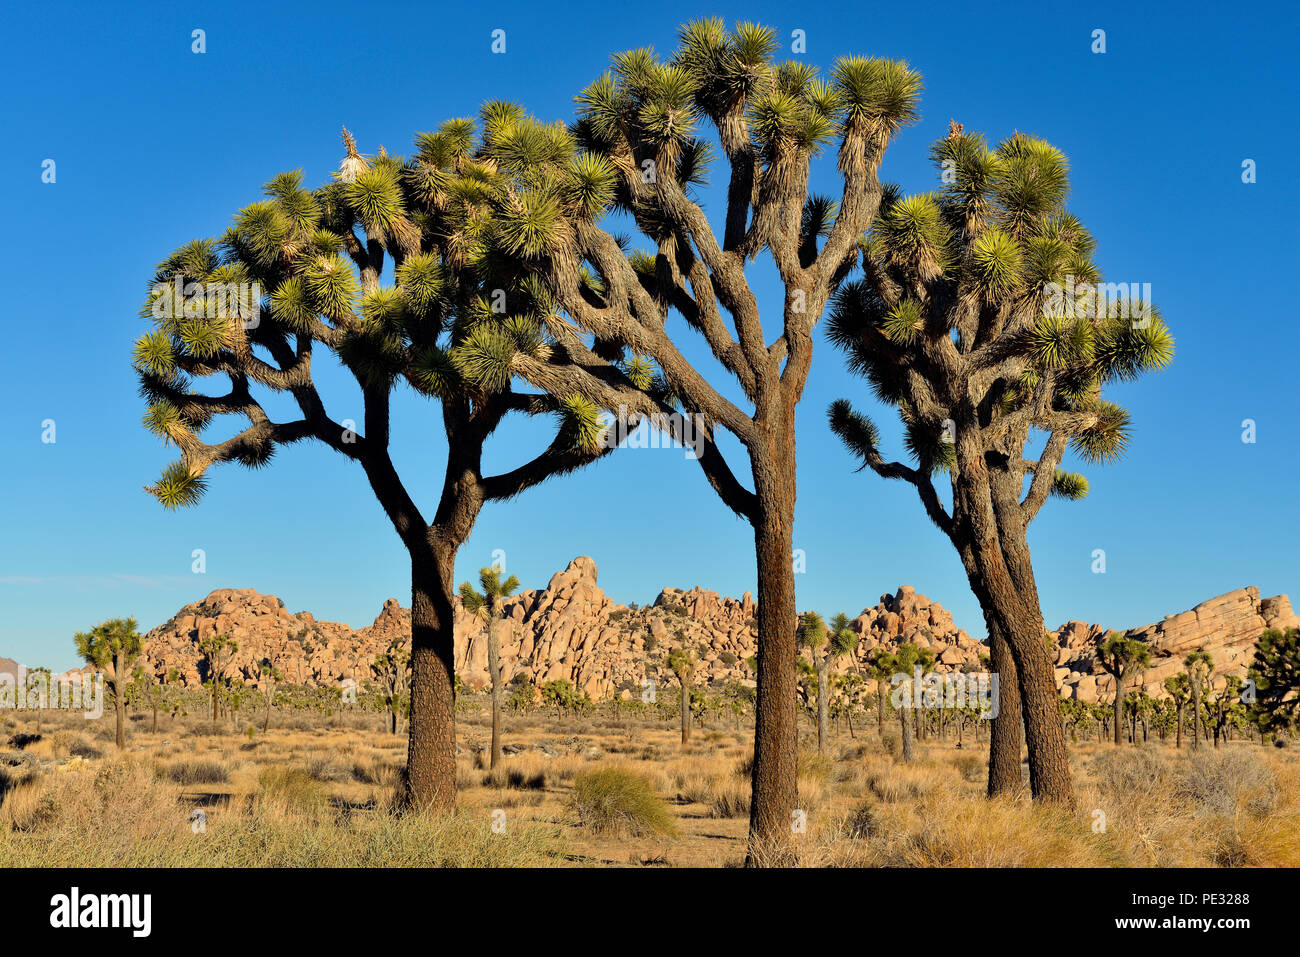 Joshua tree (Yucca breviata), Joshua Tree National Park, California, USA Stock Photo